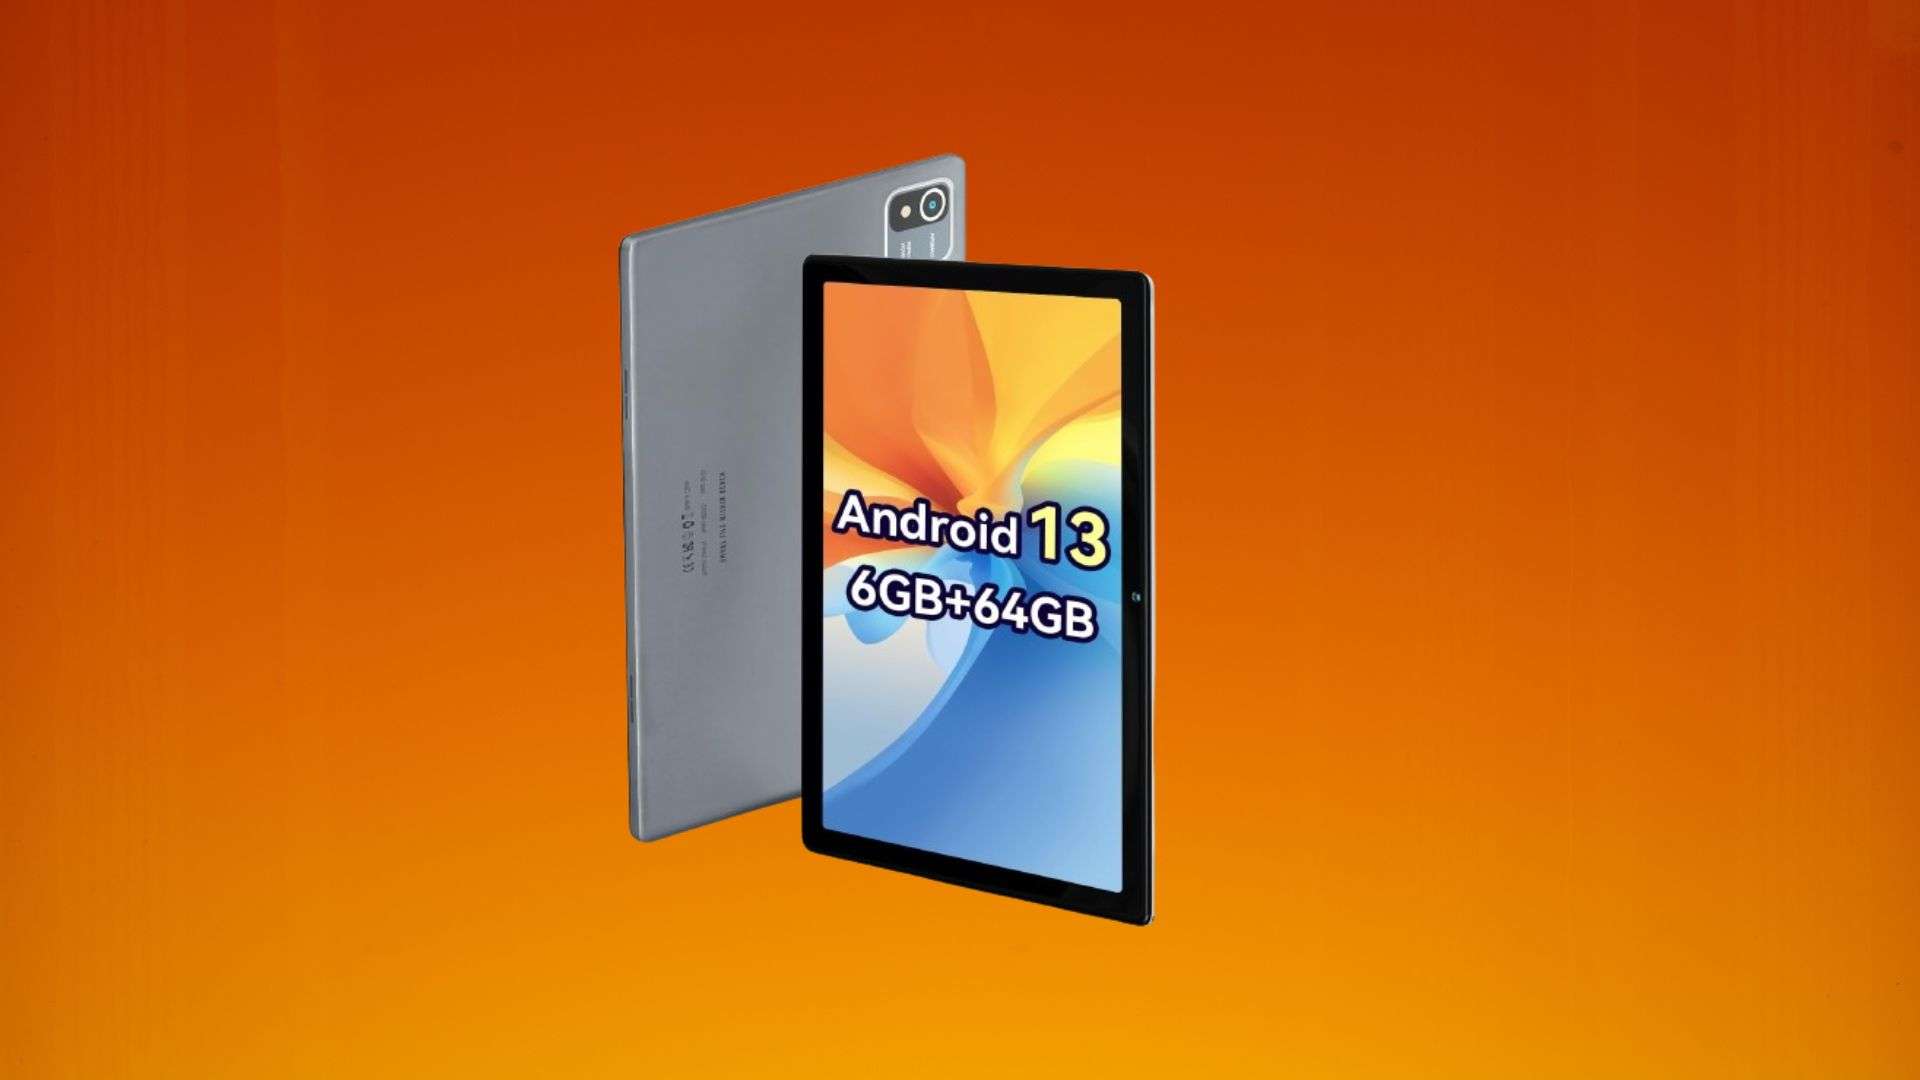 Tablet con Android 13 a meno di 60€?! Tutto vero grazie a questa